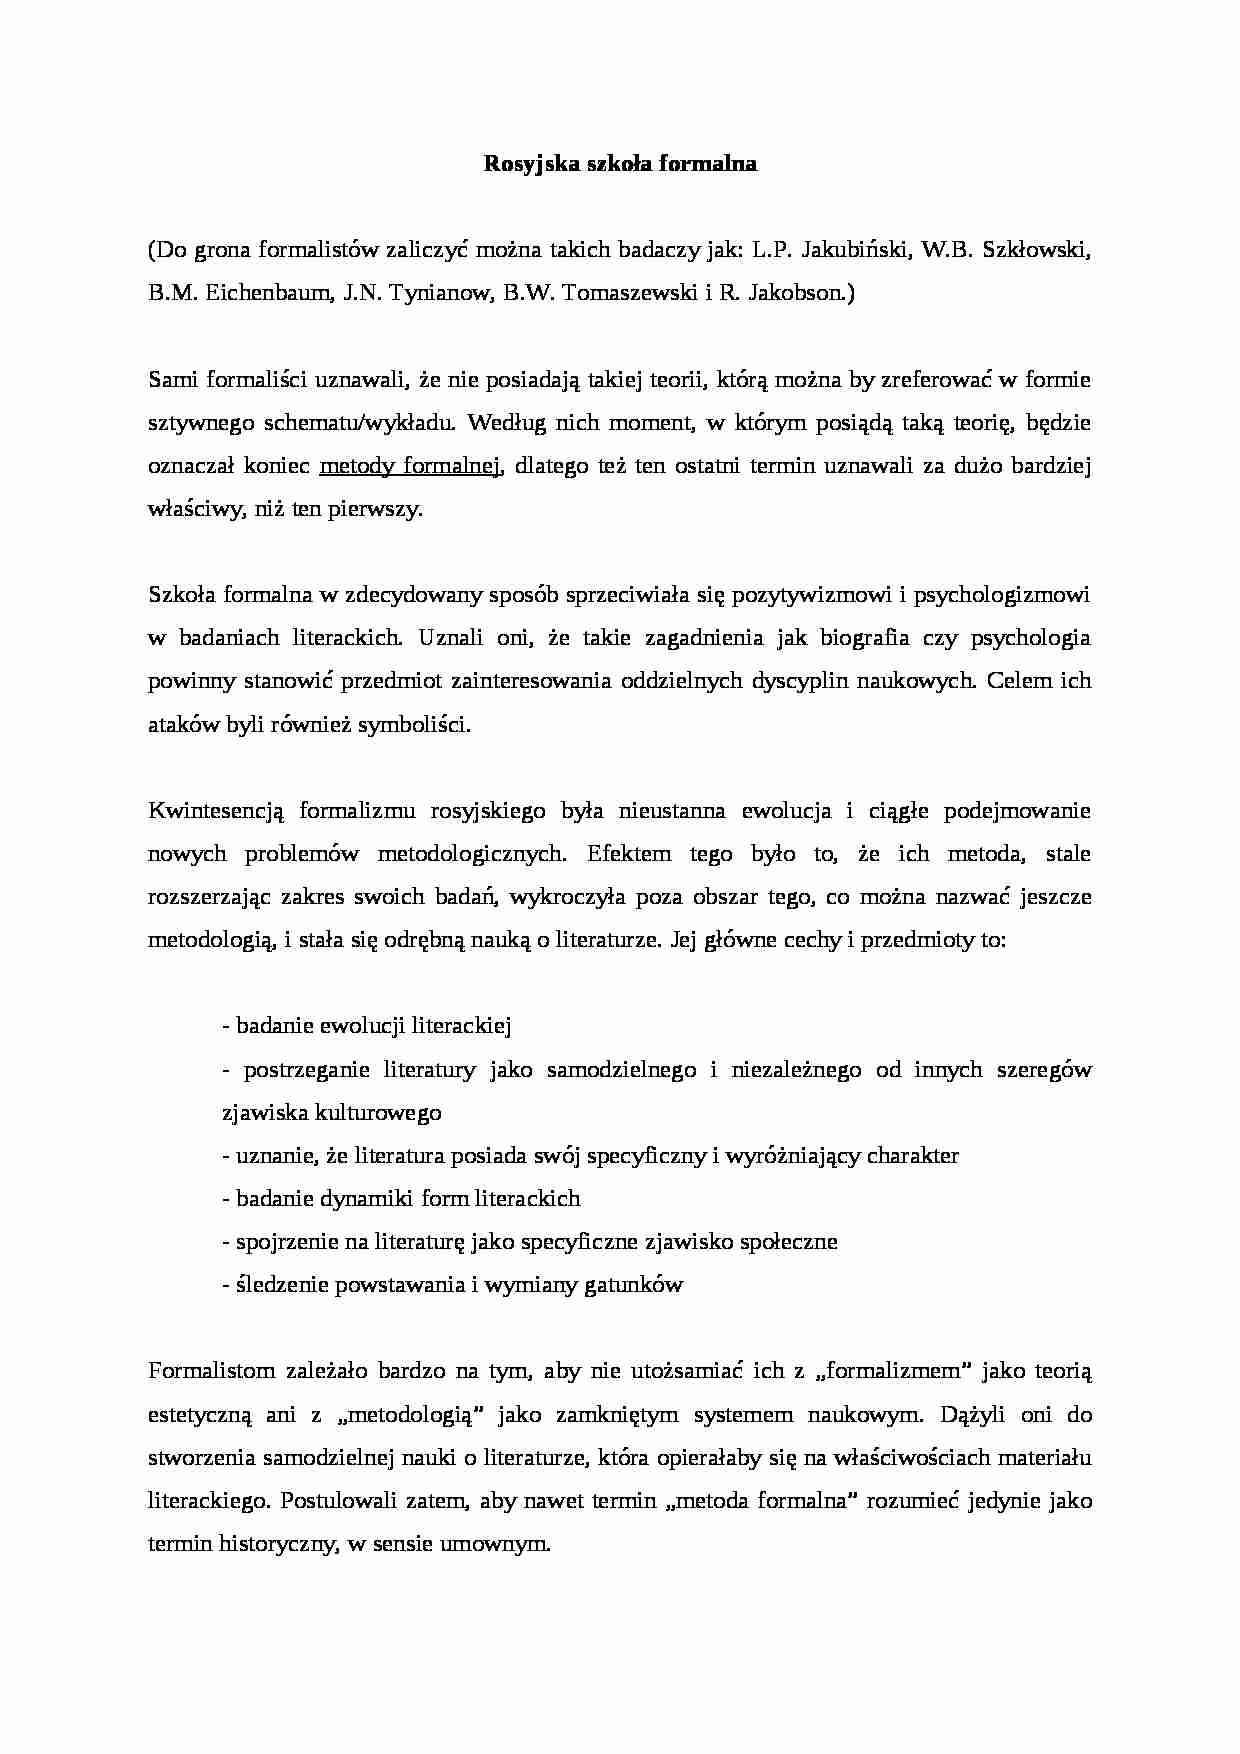 Rosyjska szkoła formalna - wykład - strona 1